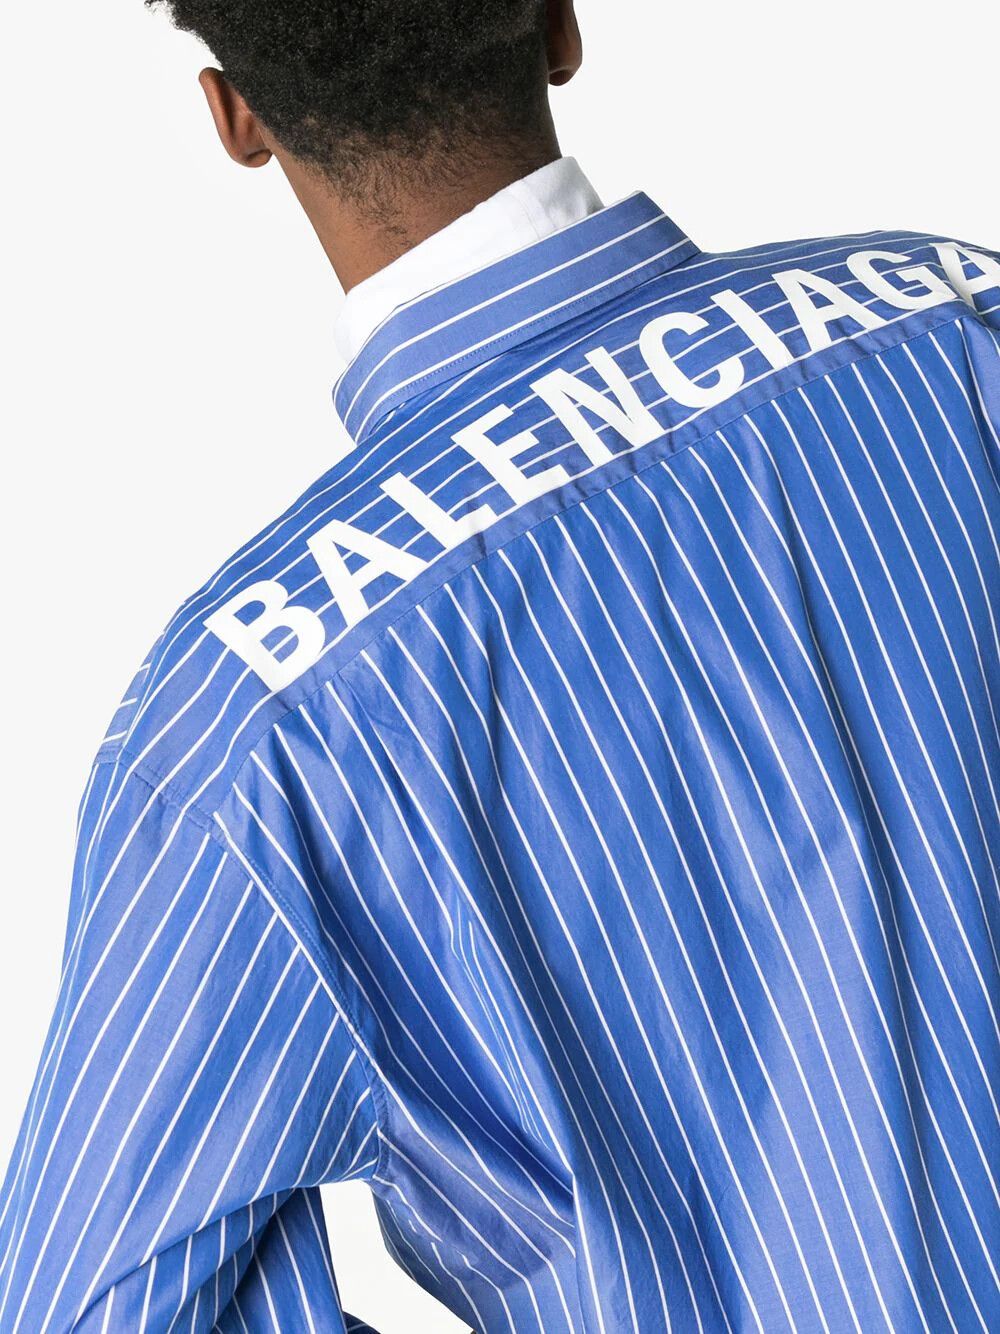 Balenciaga BALENCIAGA oversized back logo striped shirt | Grailed